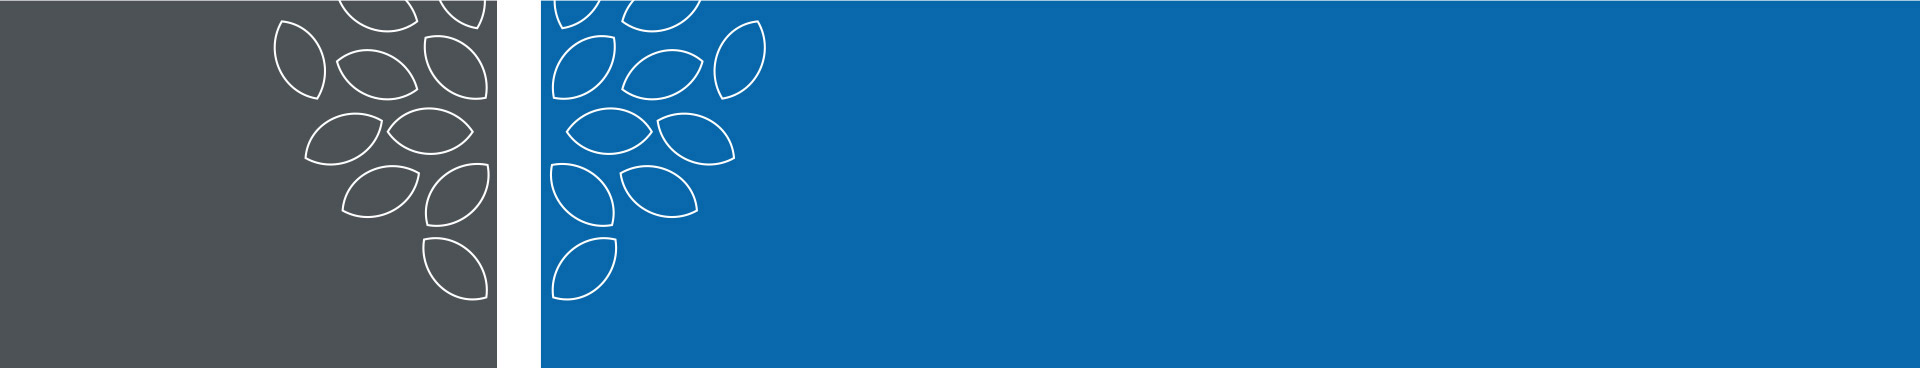 הציפור הכחולה מאת מוריס מטרלניק תרגום, עיבוד מבוא והארות – אמיר לביא